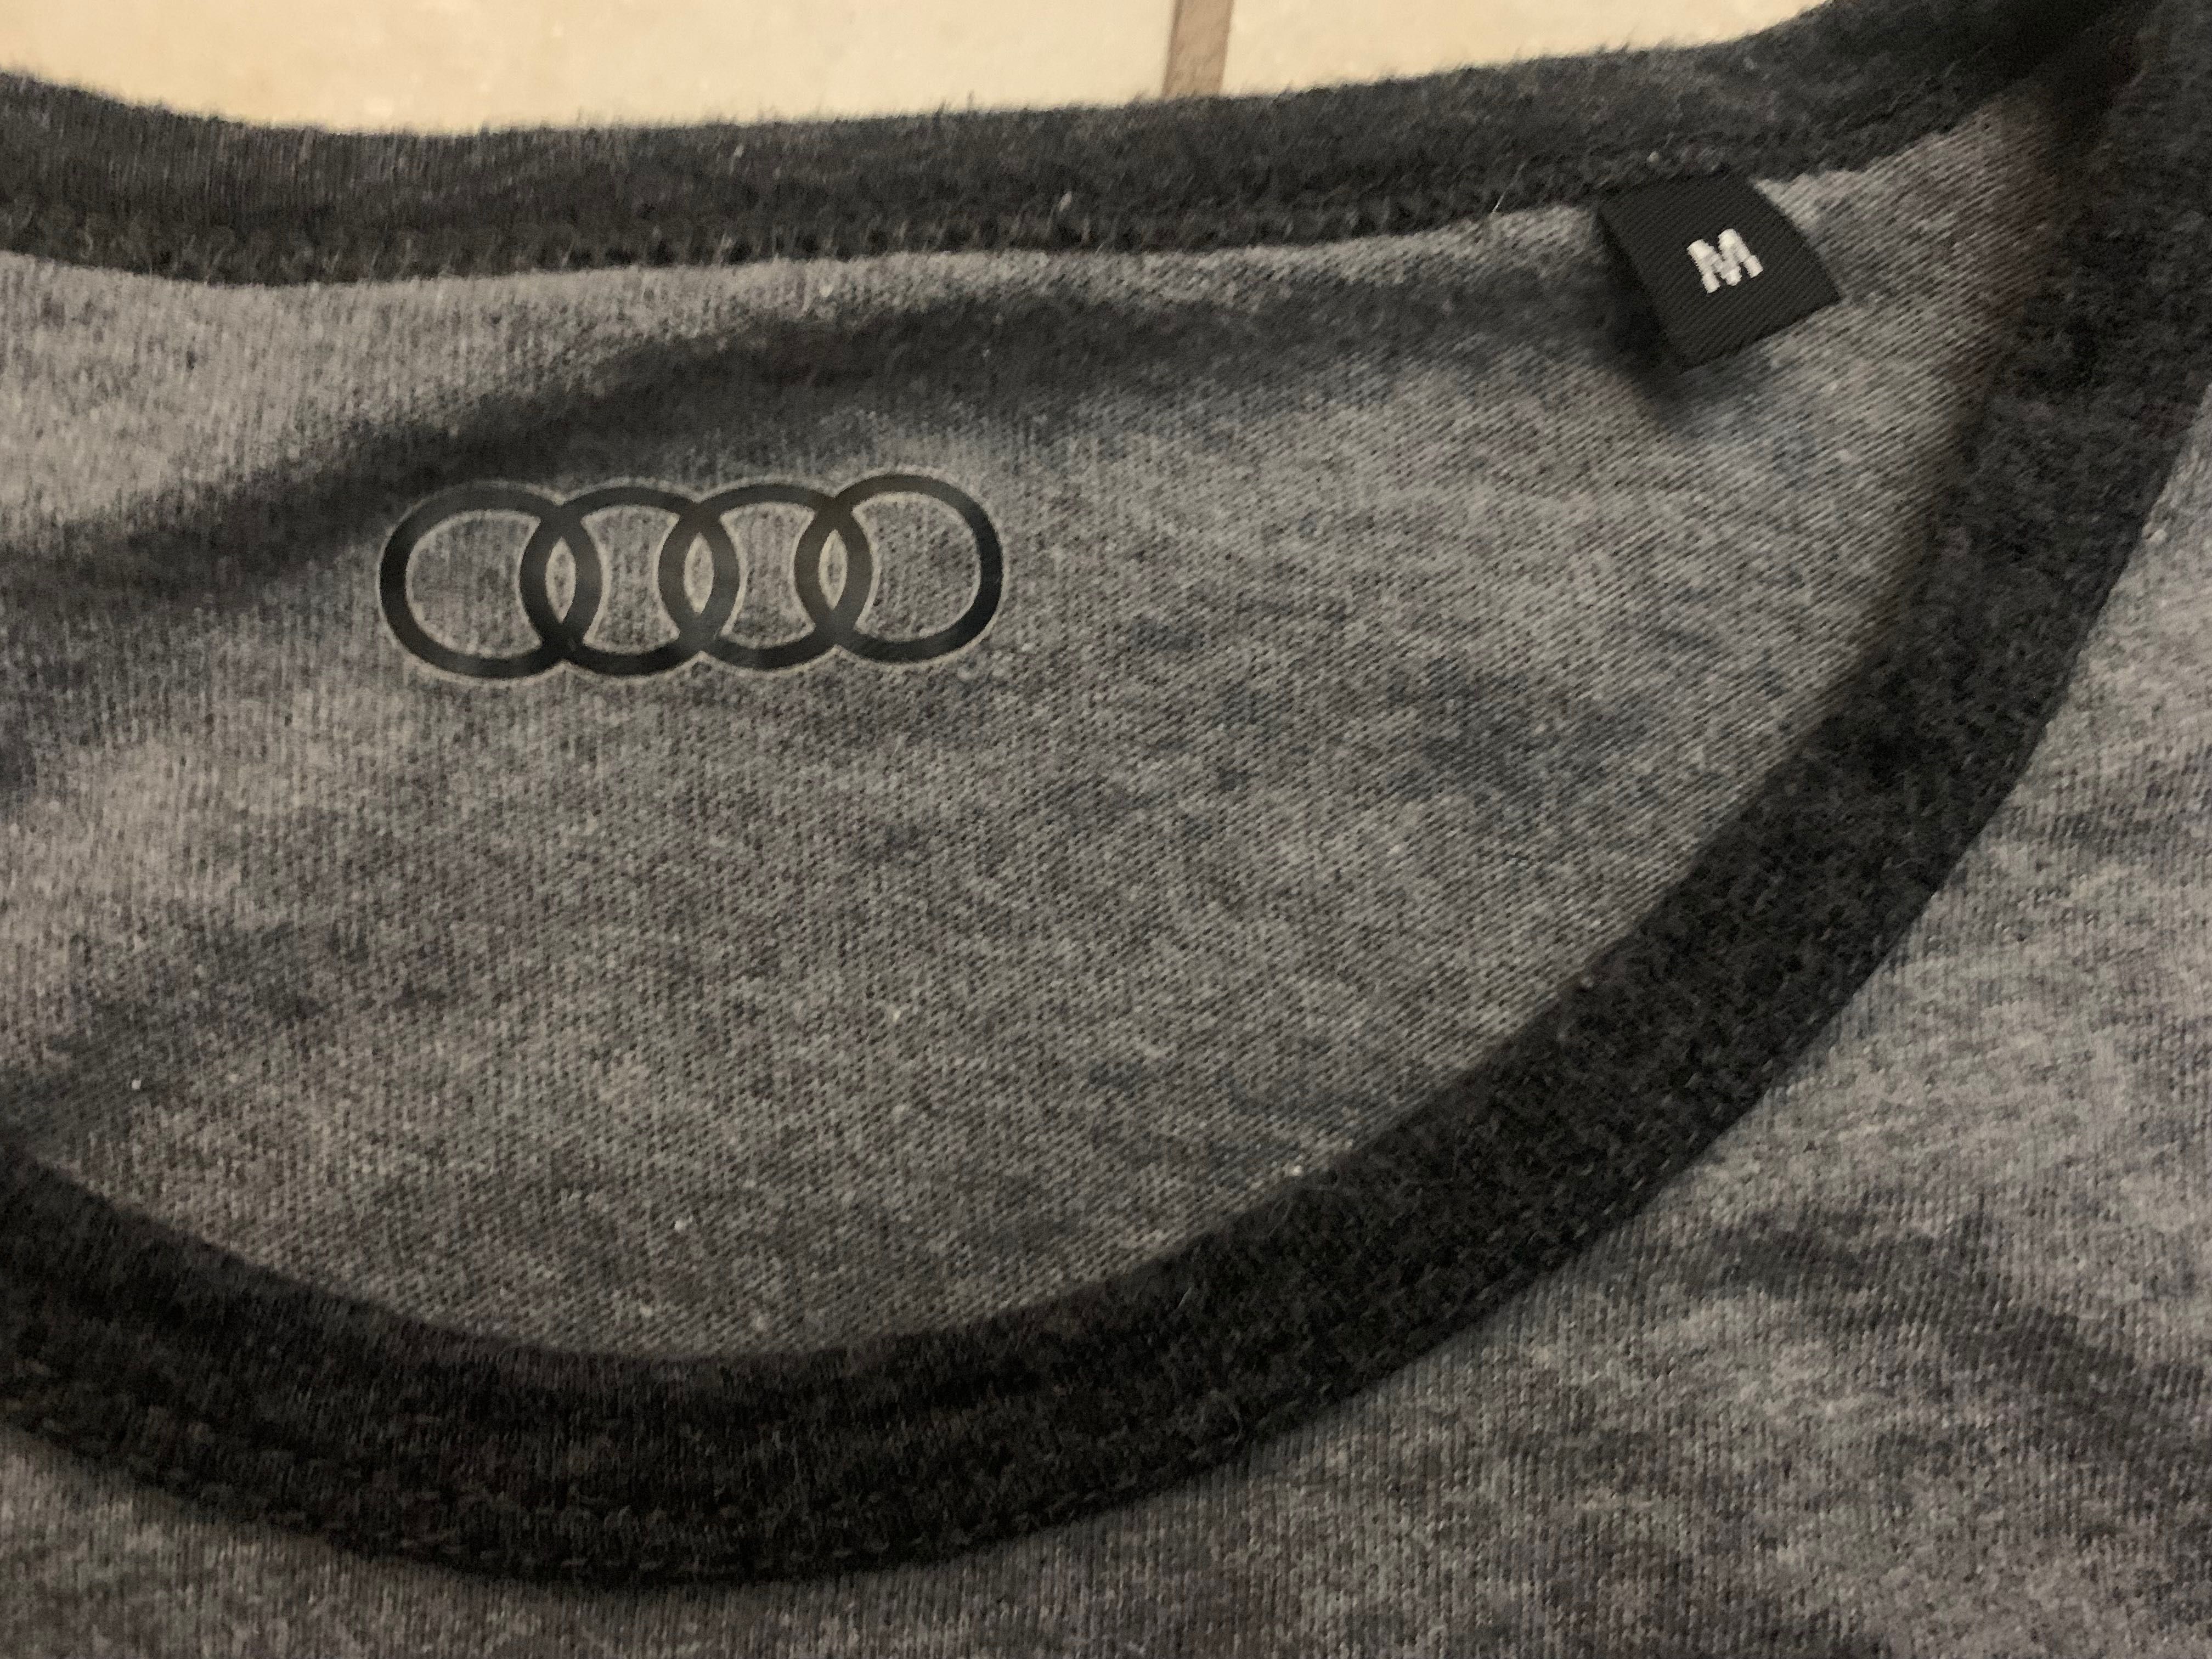 Audi Koszulka szara  męska T-shirt r. M  extra stan bawełna licencyjna